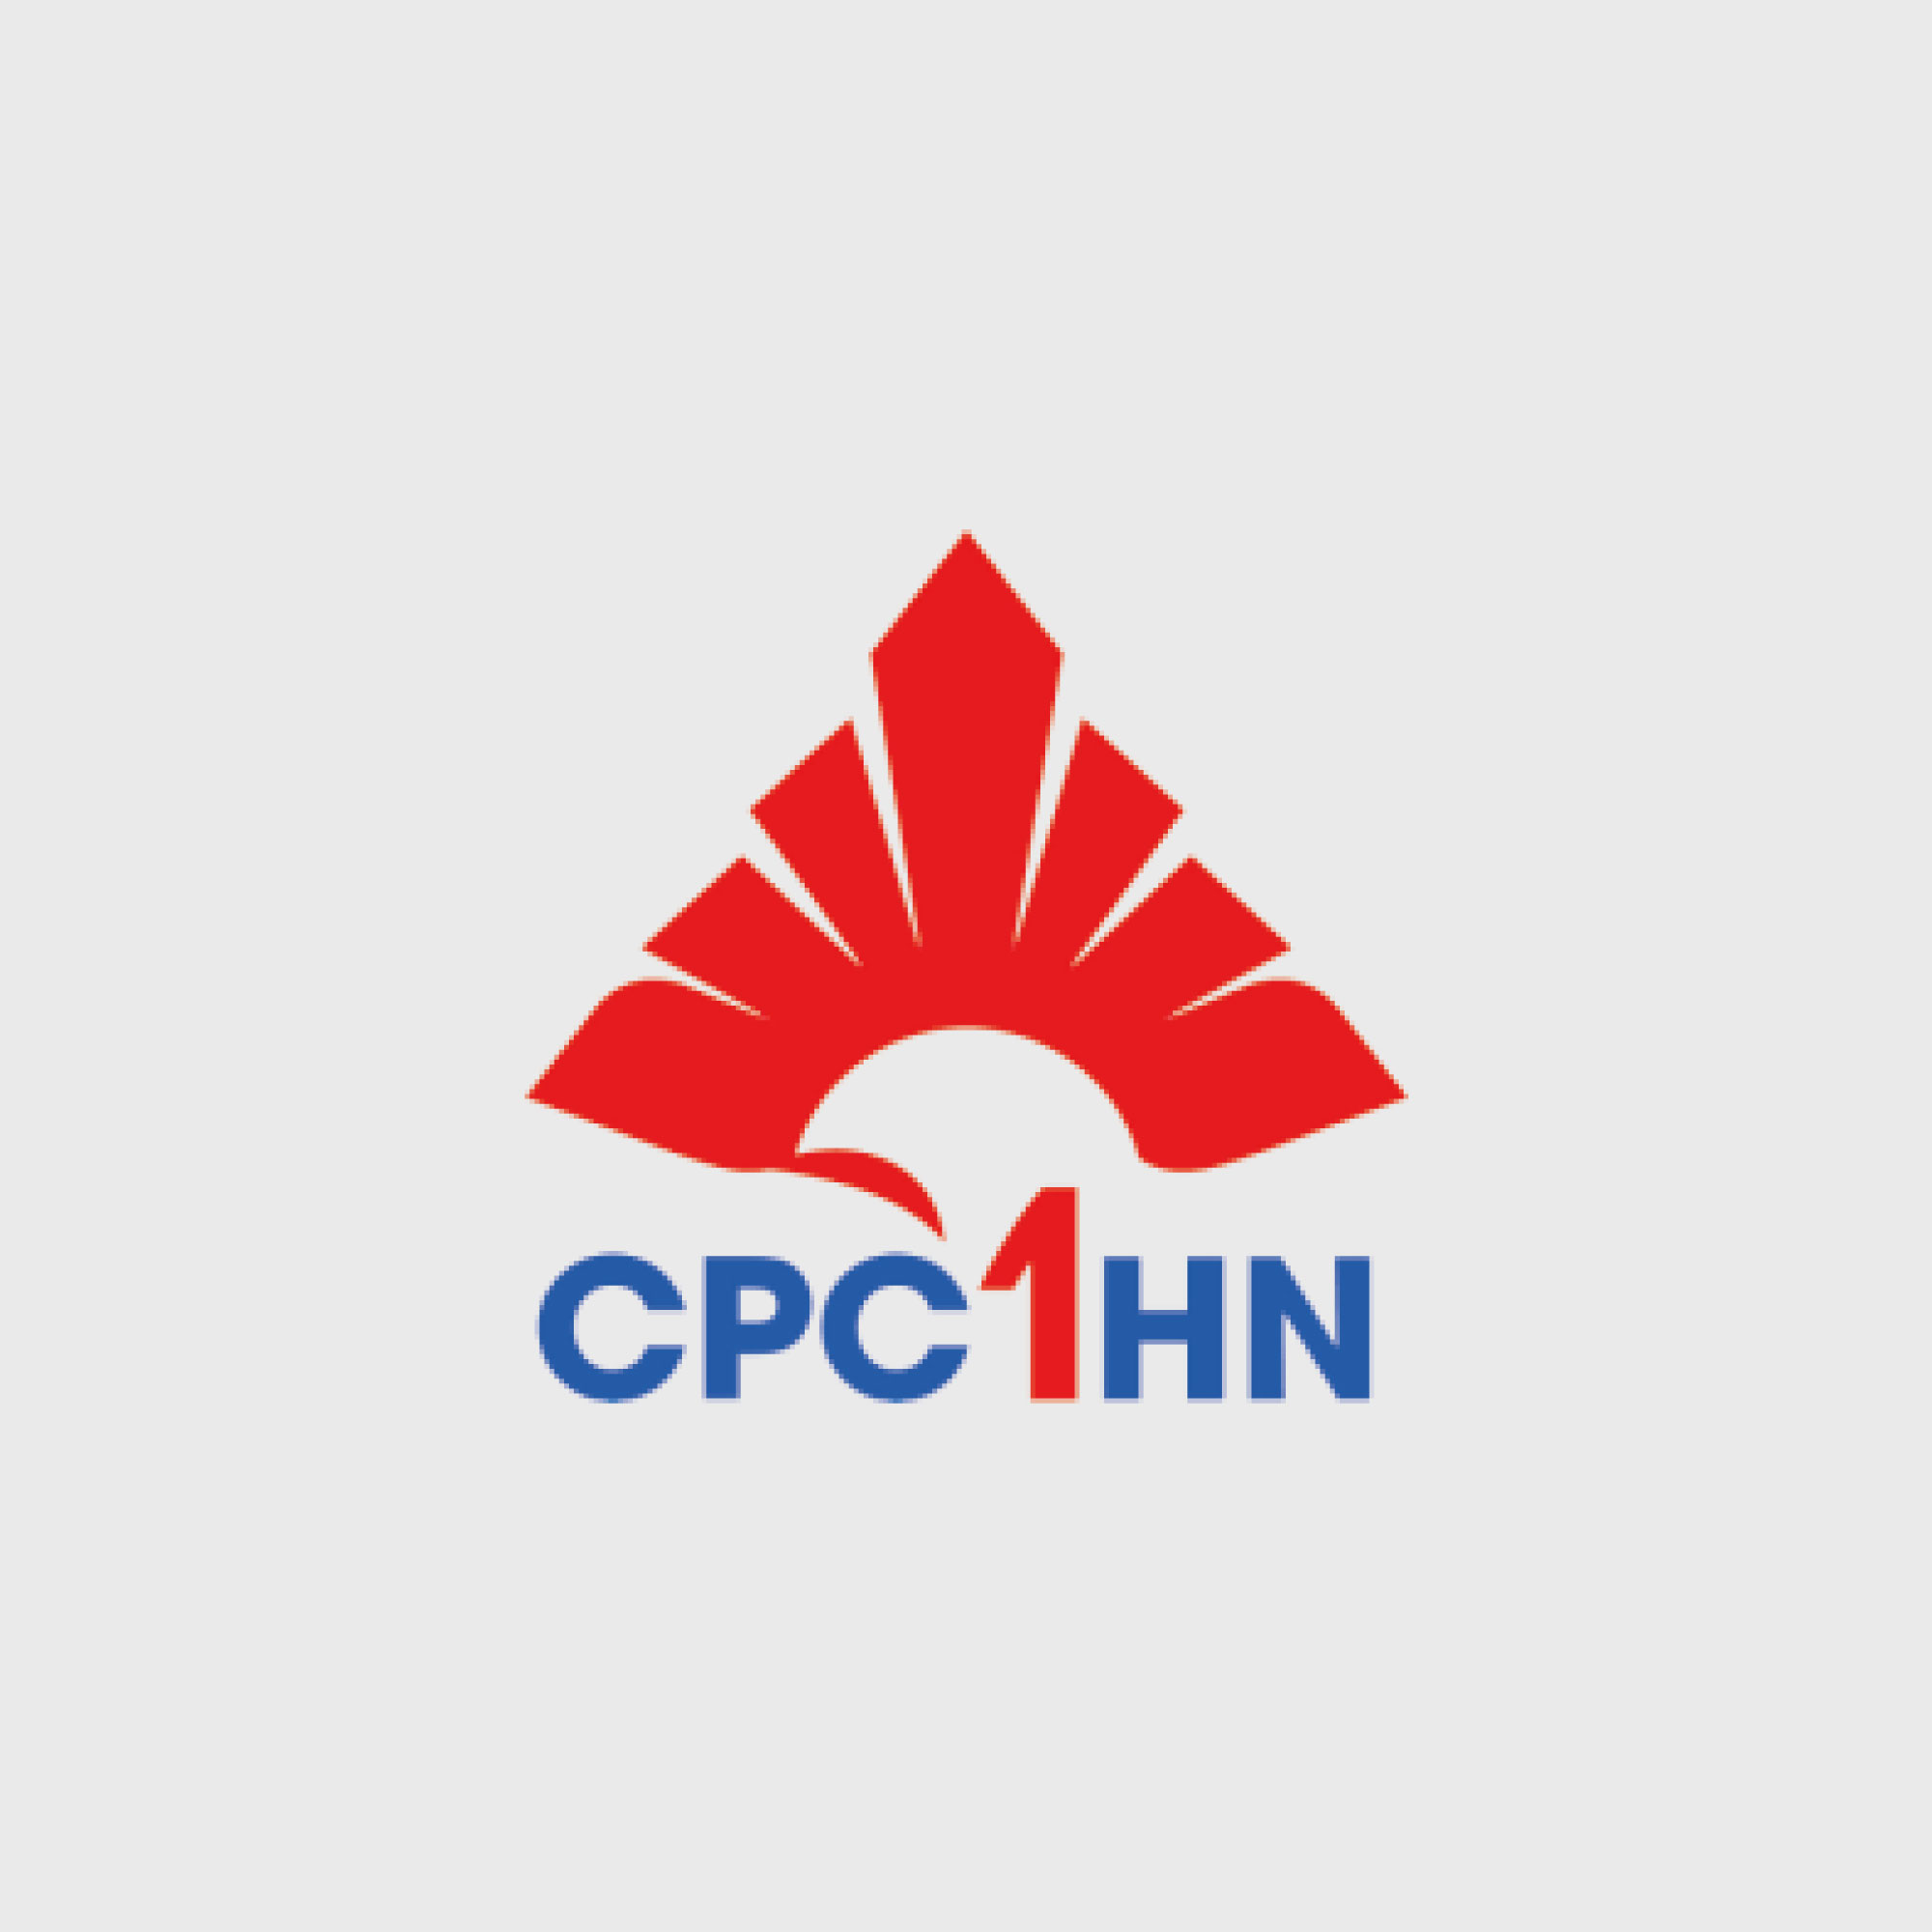 CPC1HN